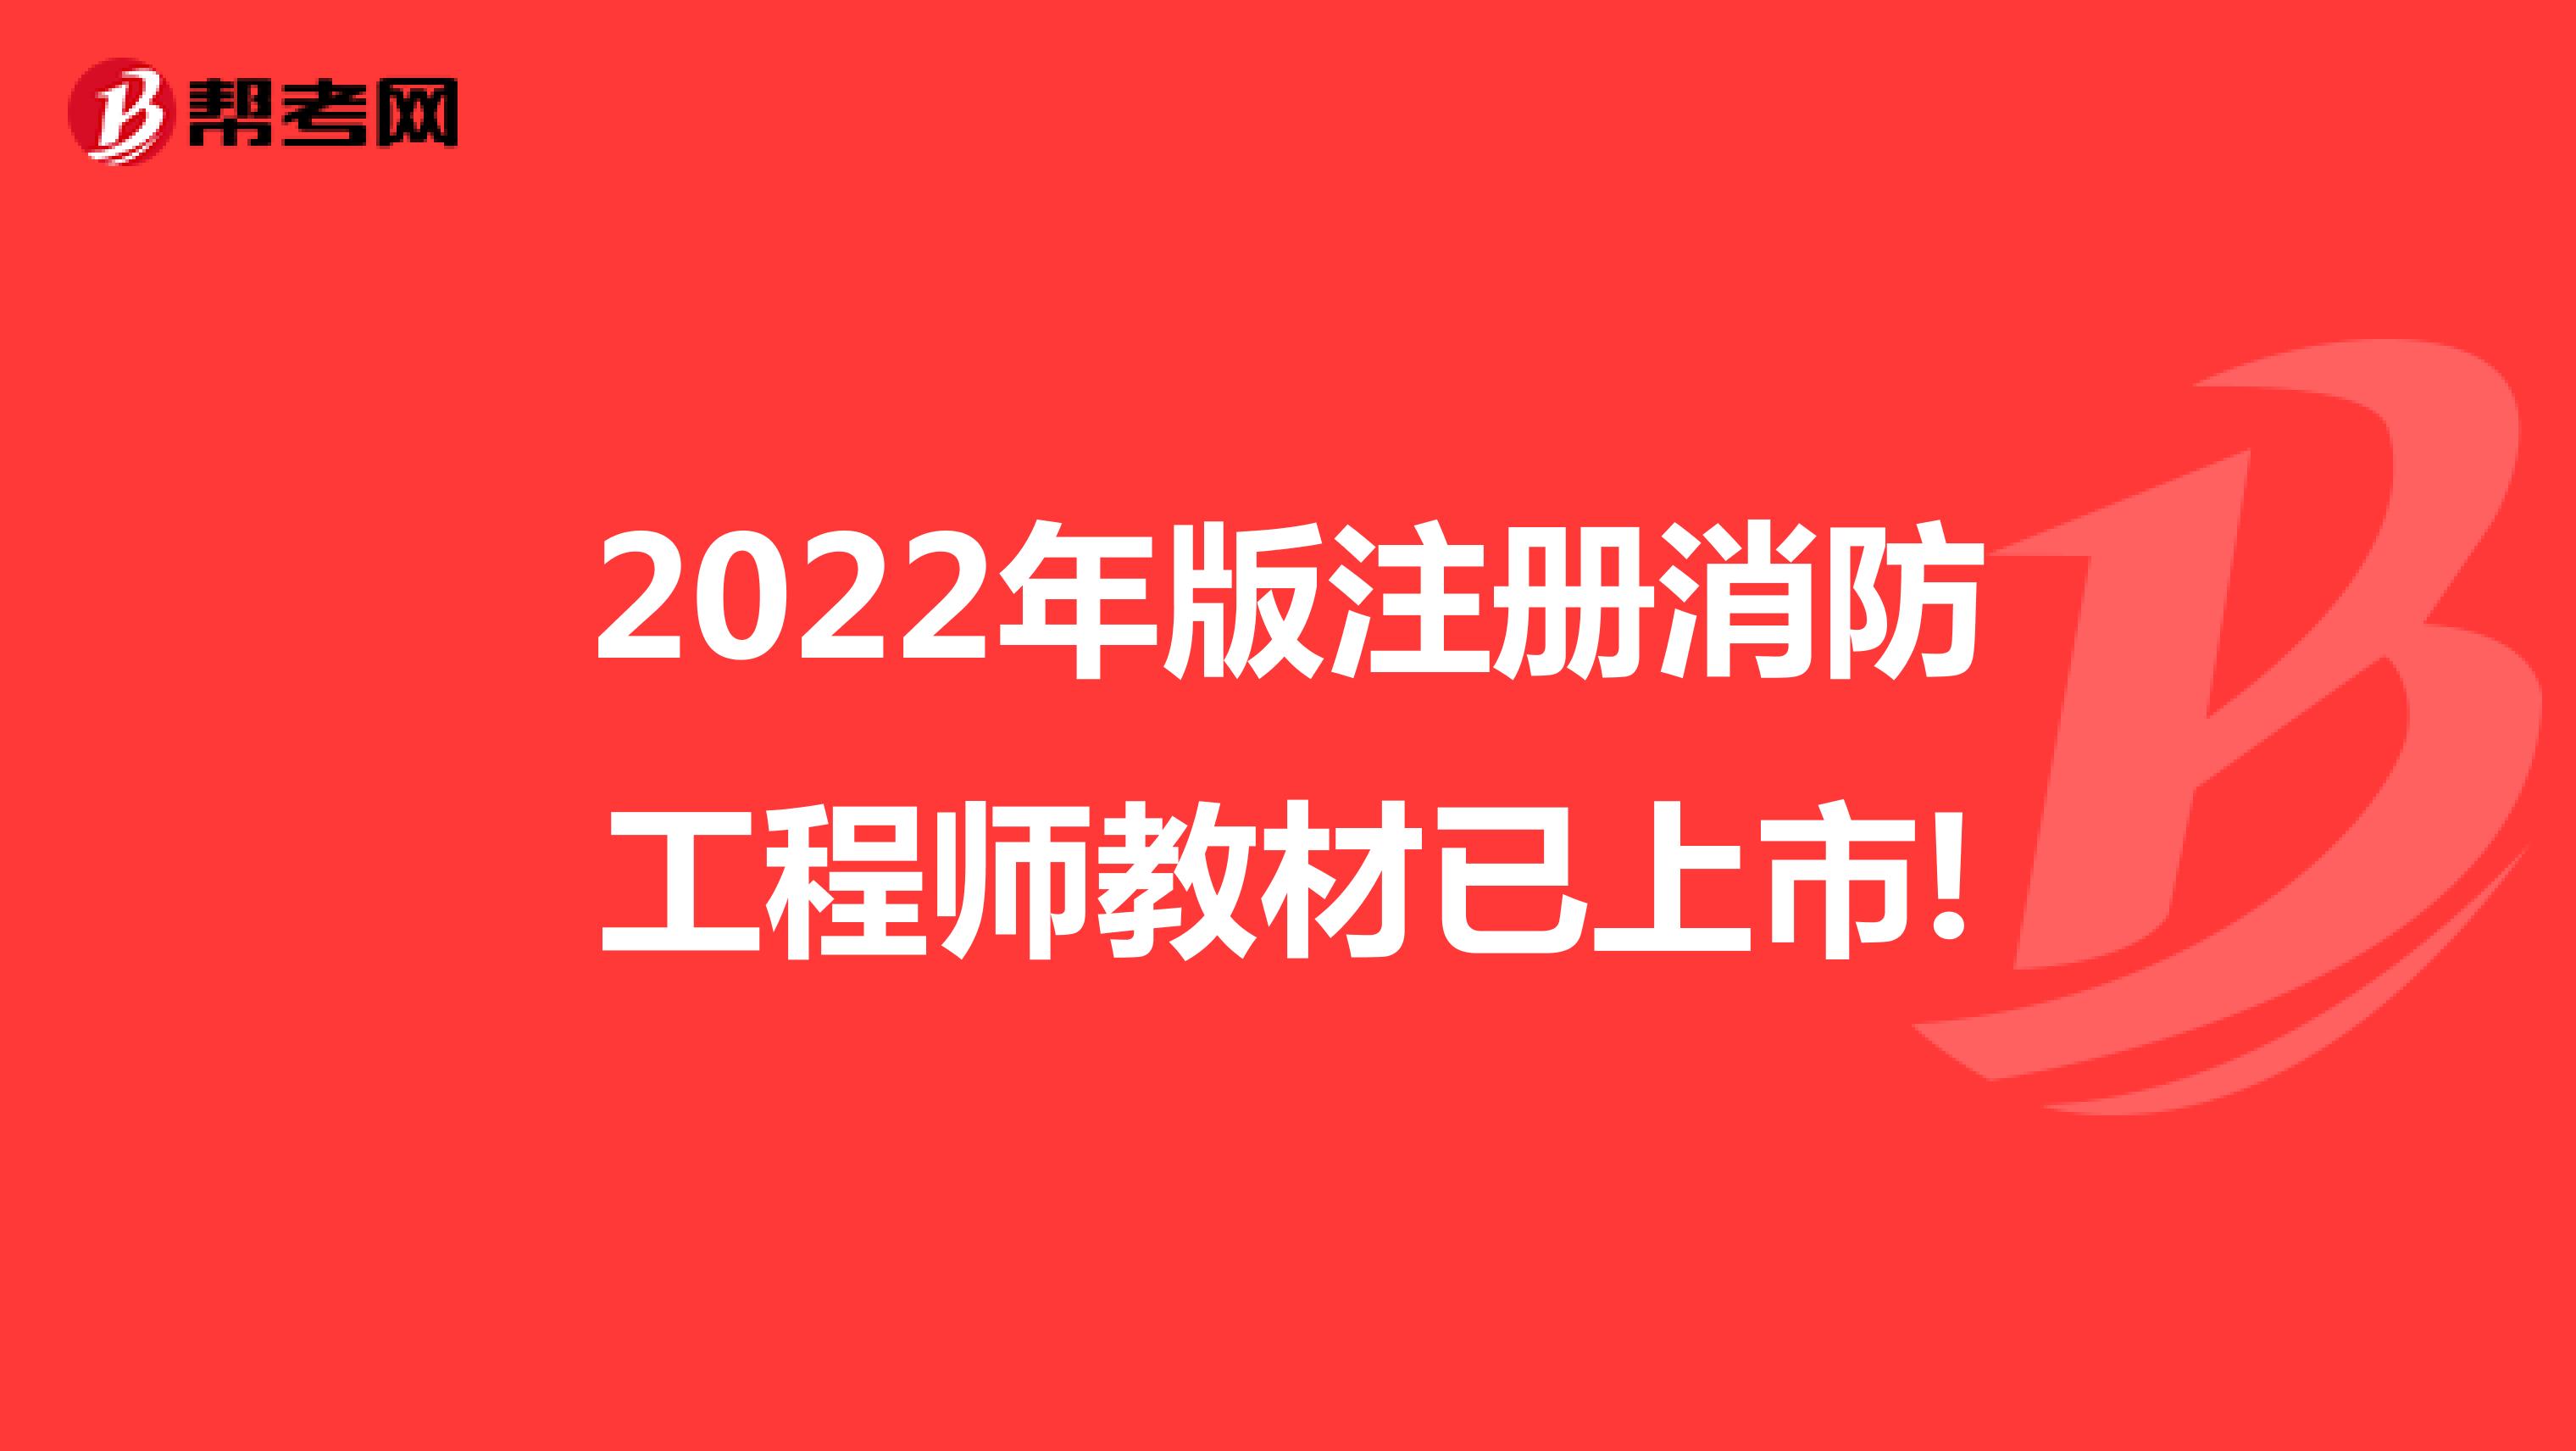 2022年版注册消防工程师教材已上市!